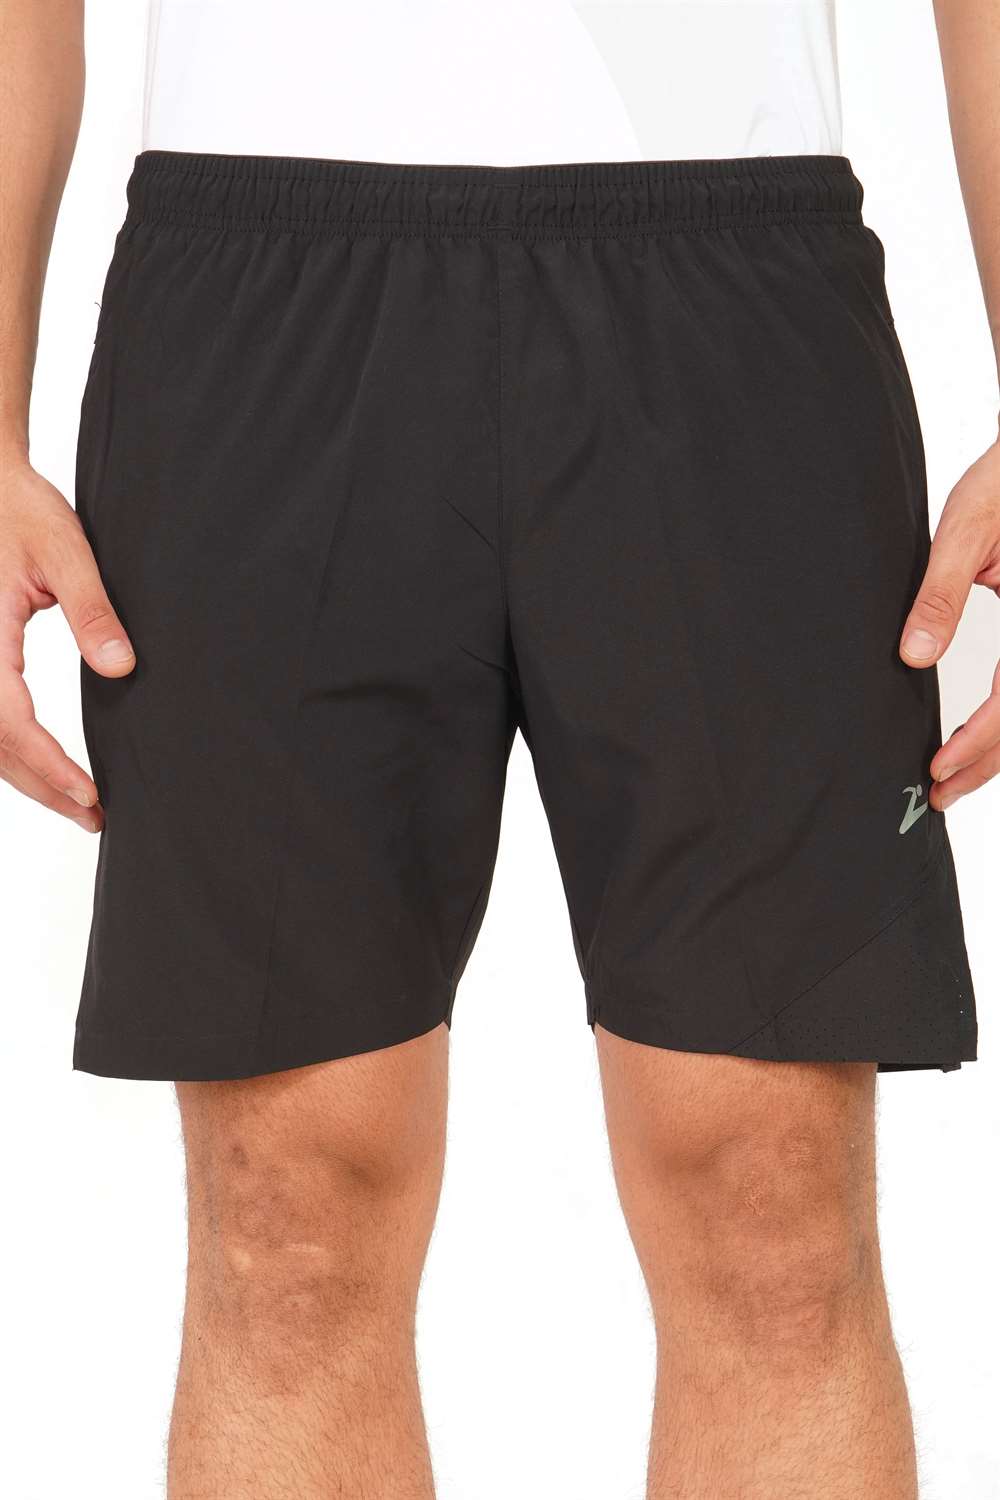 Zordus Motive 0458 Men’s Shorts